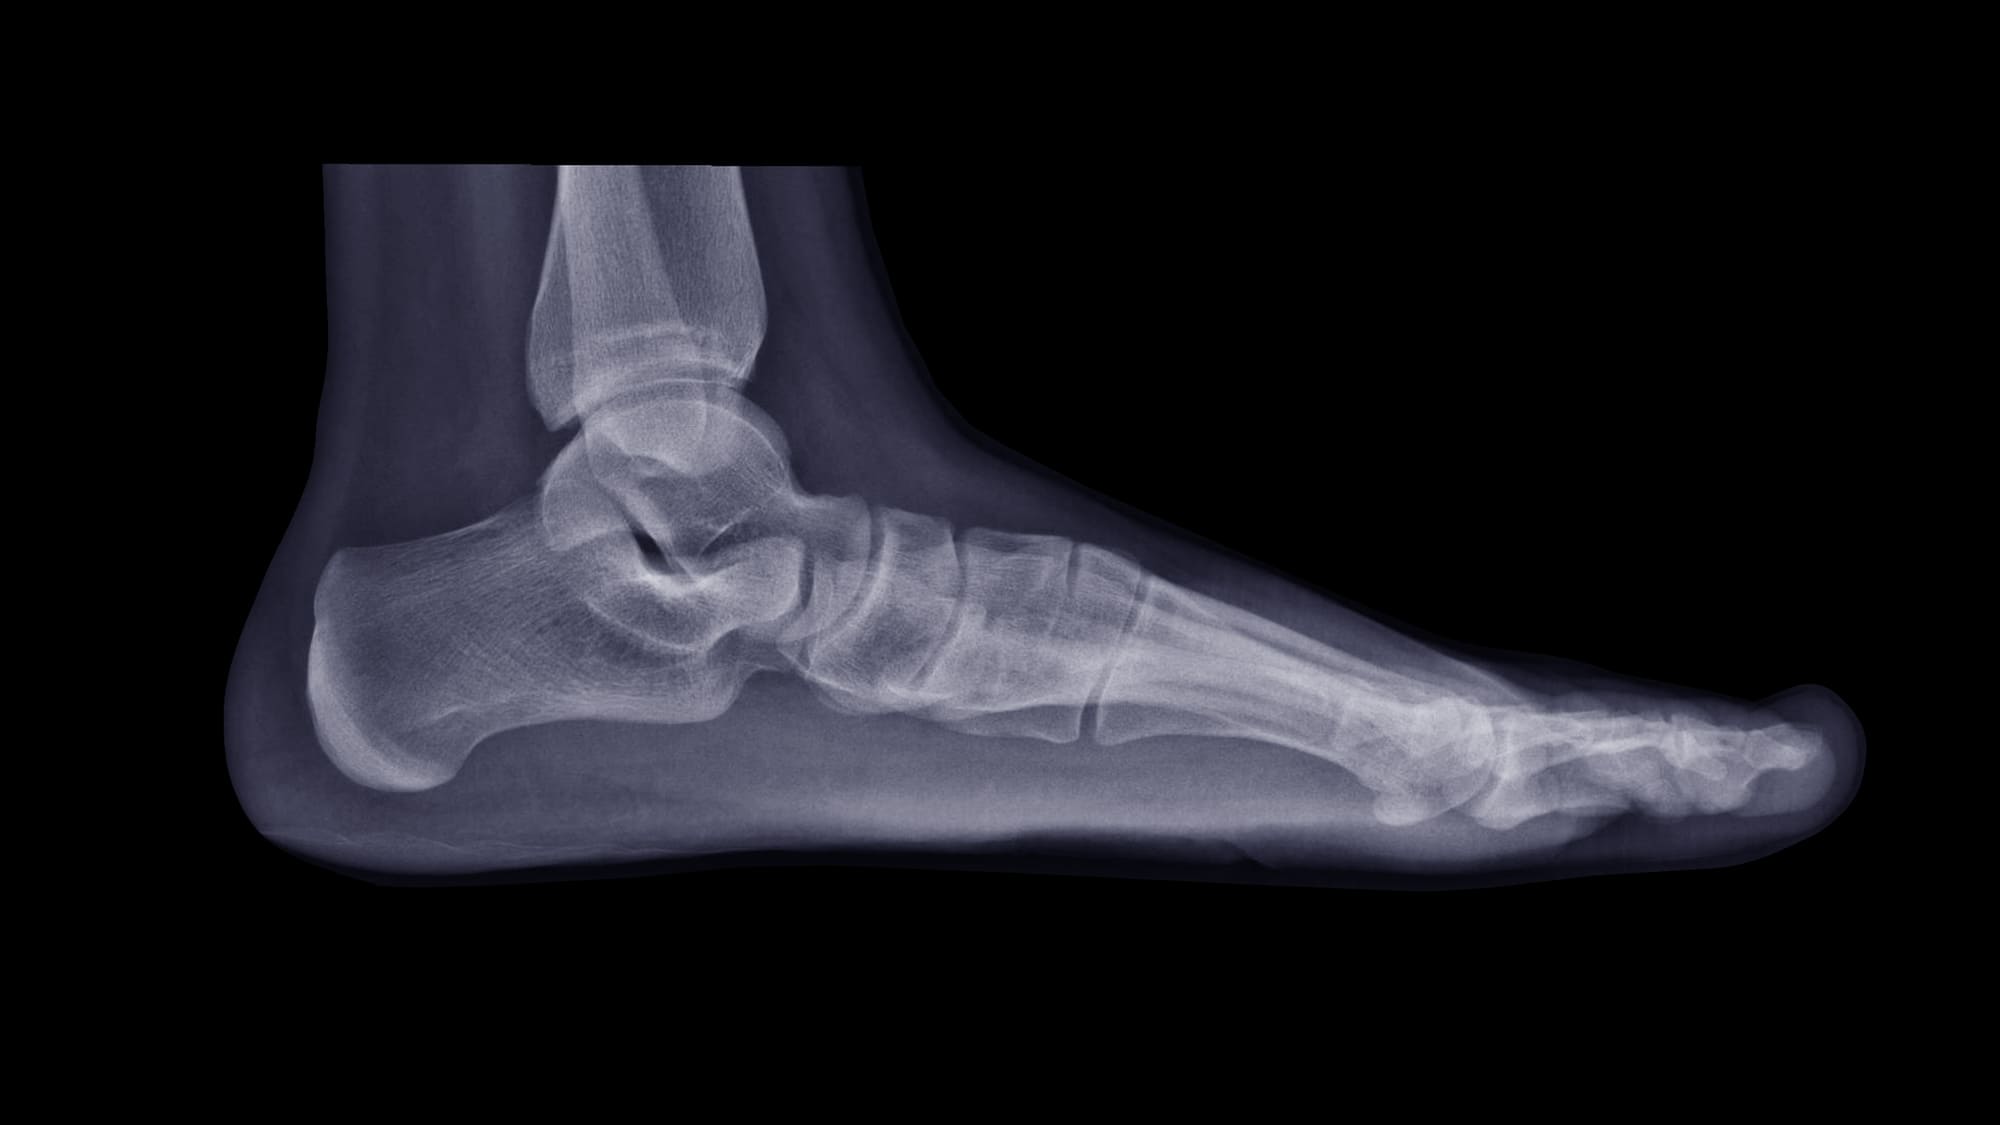 huesos del pie